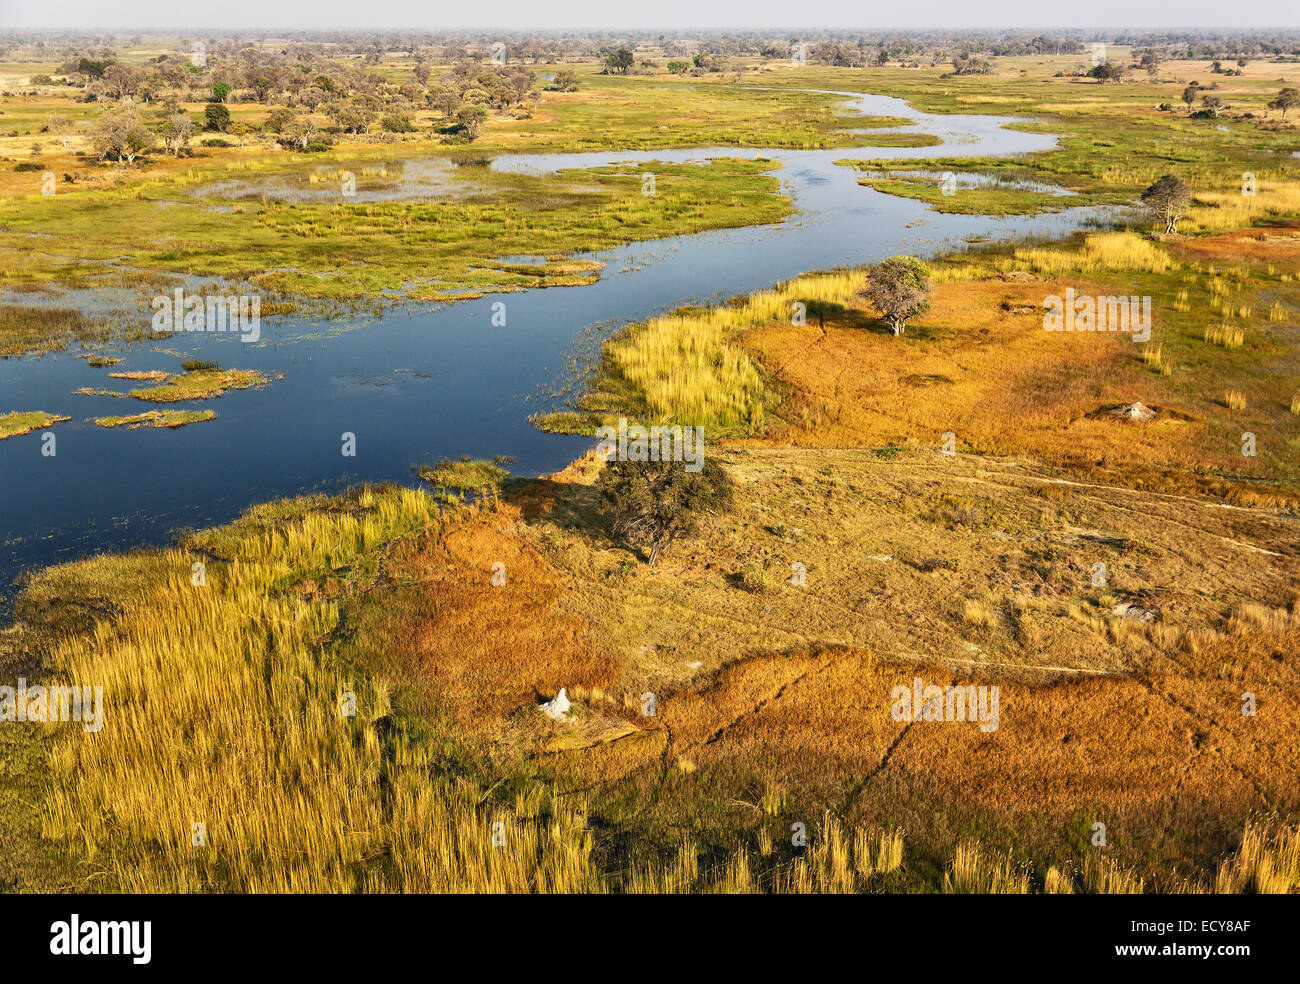 Il fiume Gomoti con l attiguo paludi di acqua dolce, vista aerea, Okavango Delta, Botswana Foto Stock